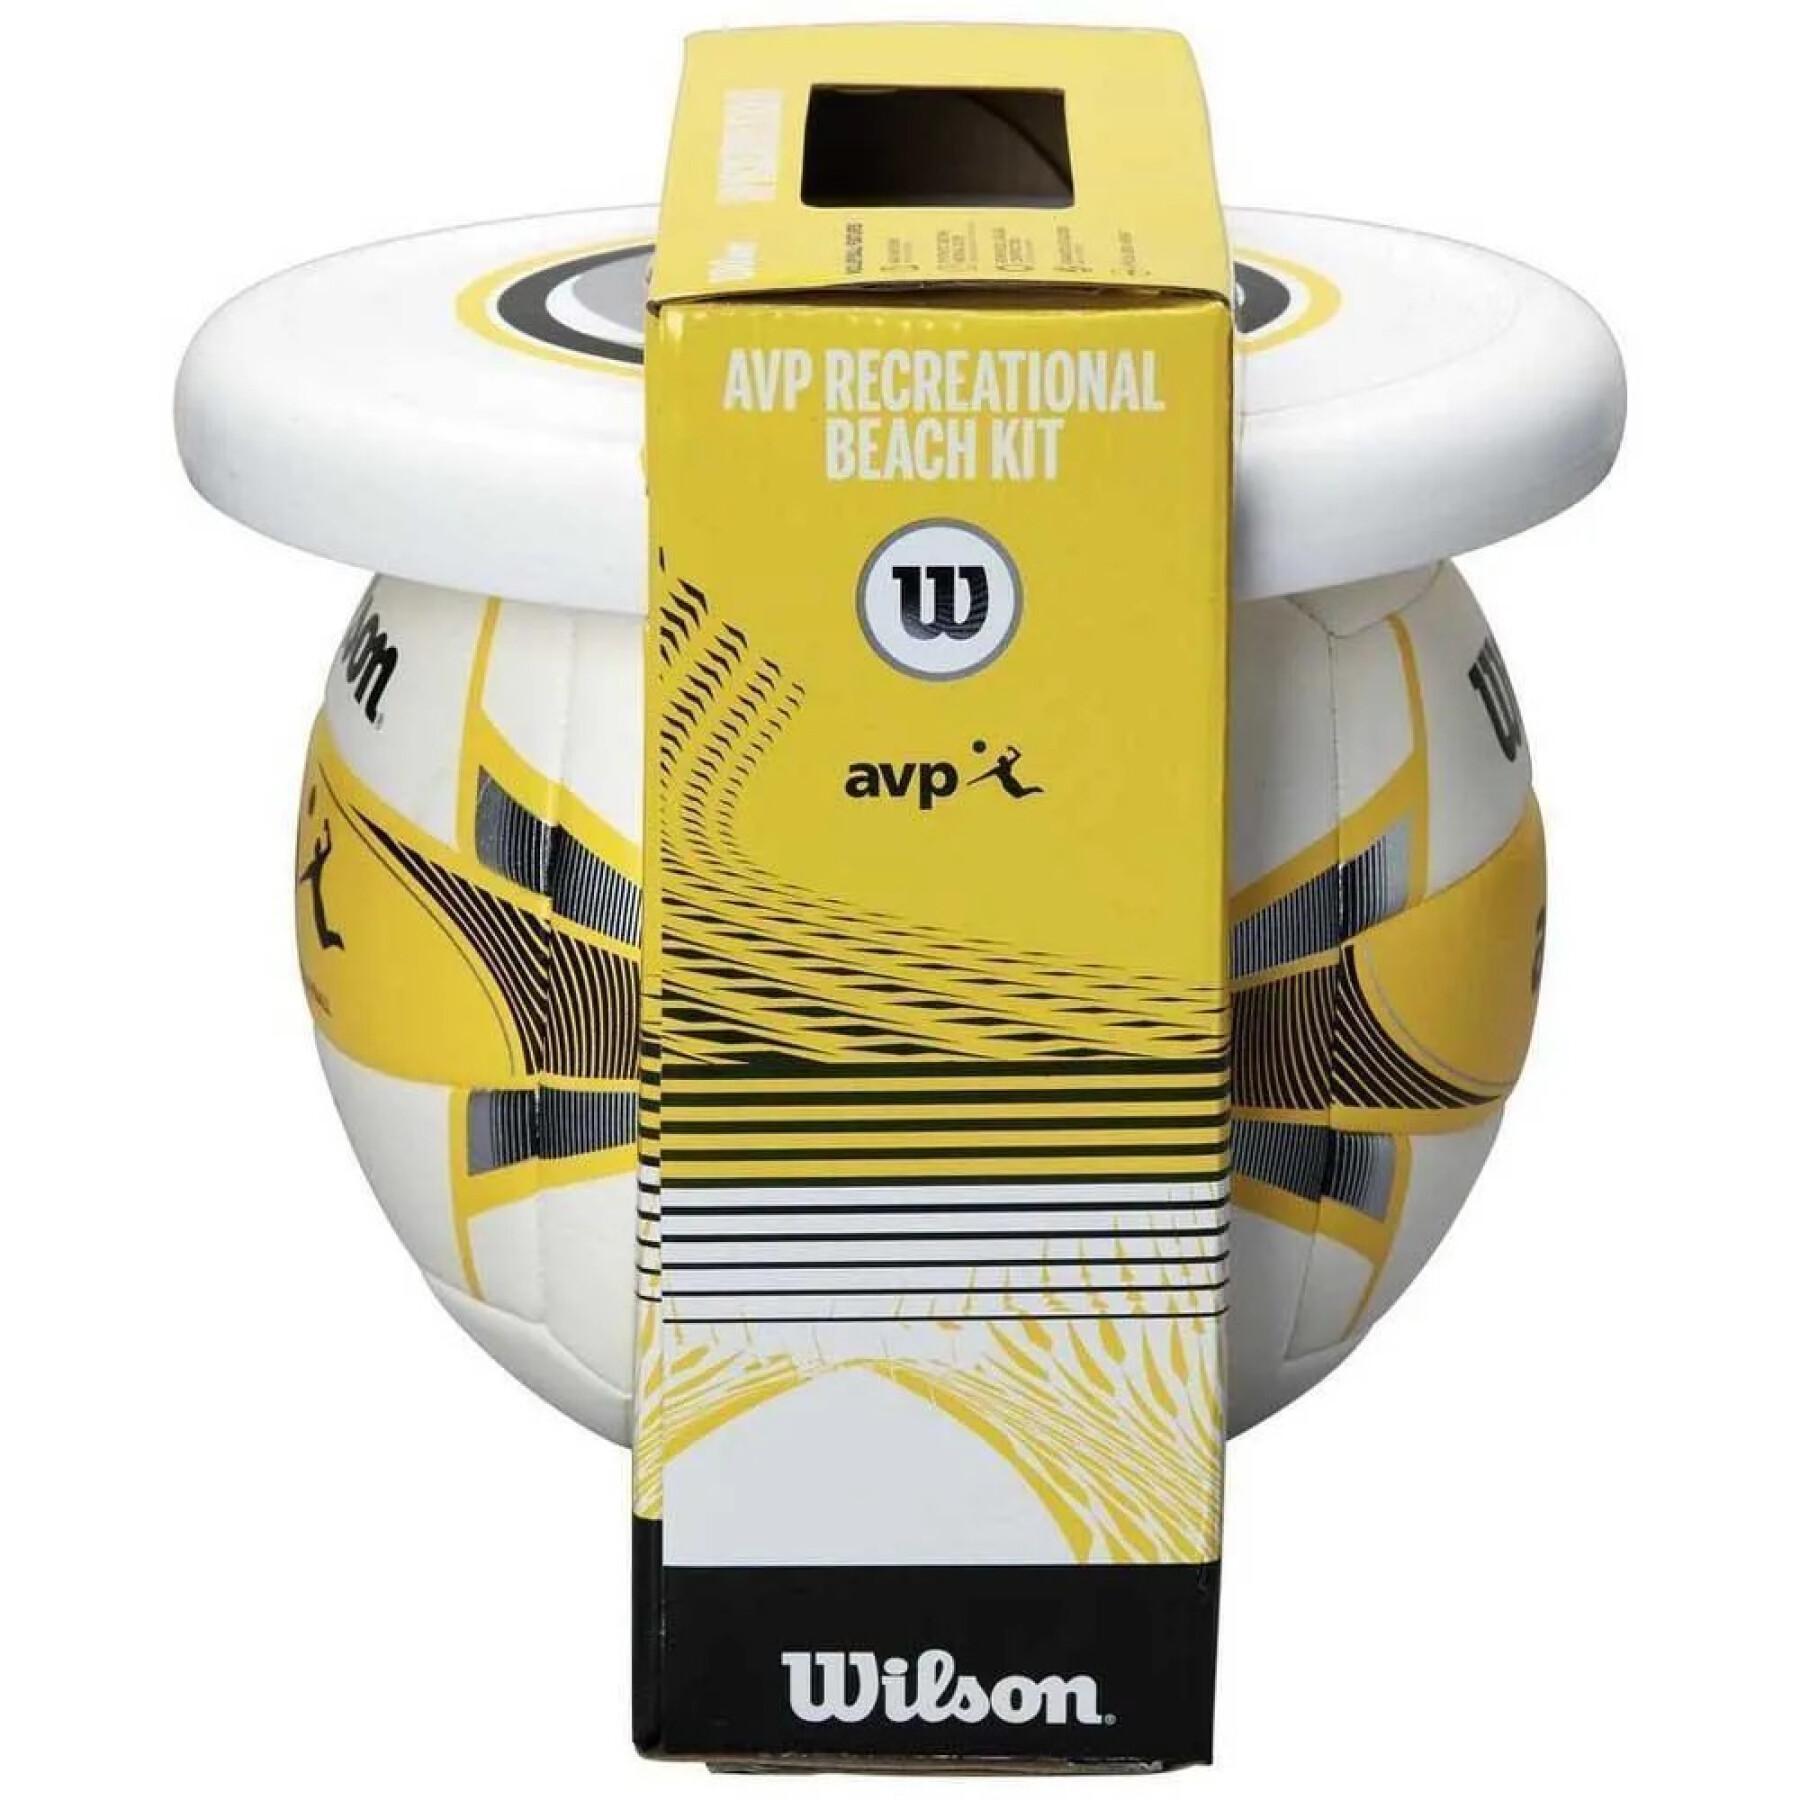 Kit de voleibol de praia Wilson AVP (Ballon + Disque)